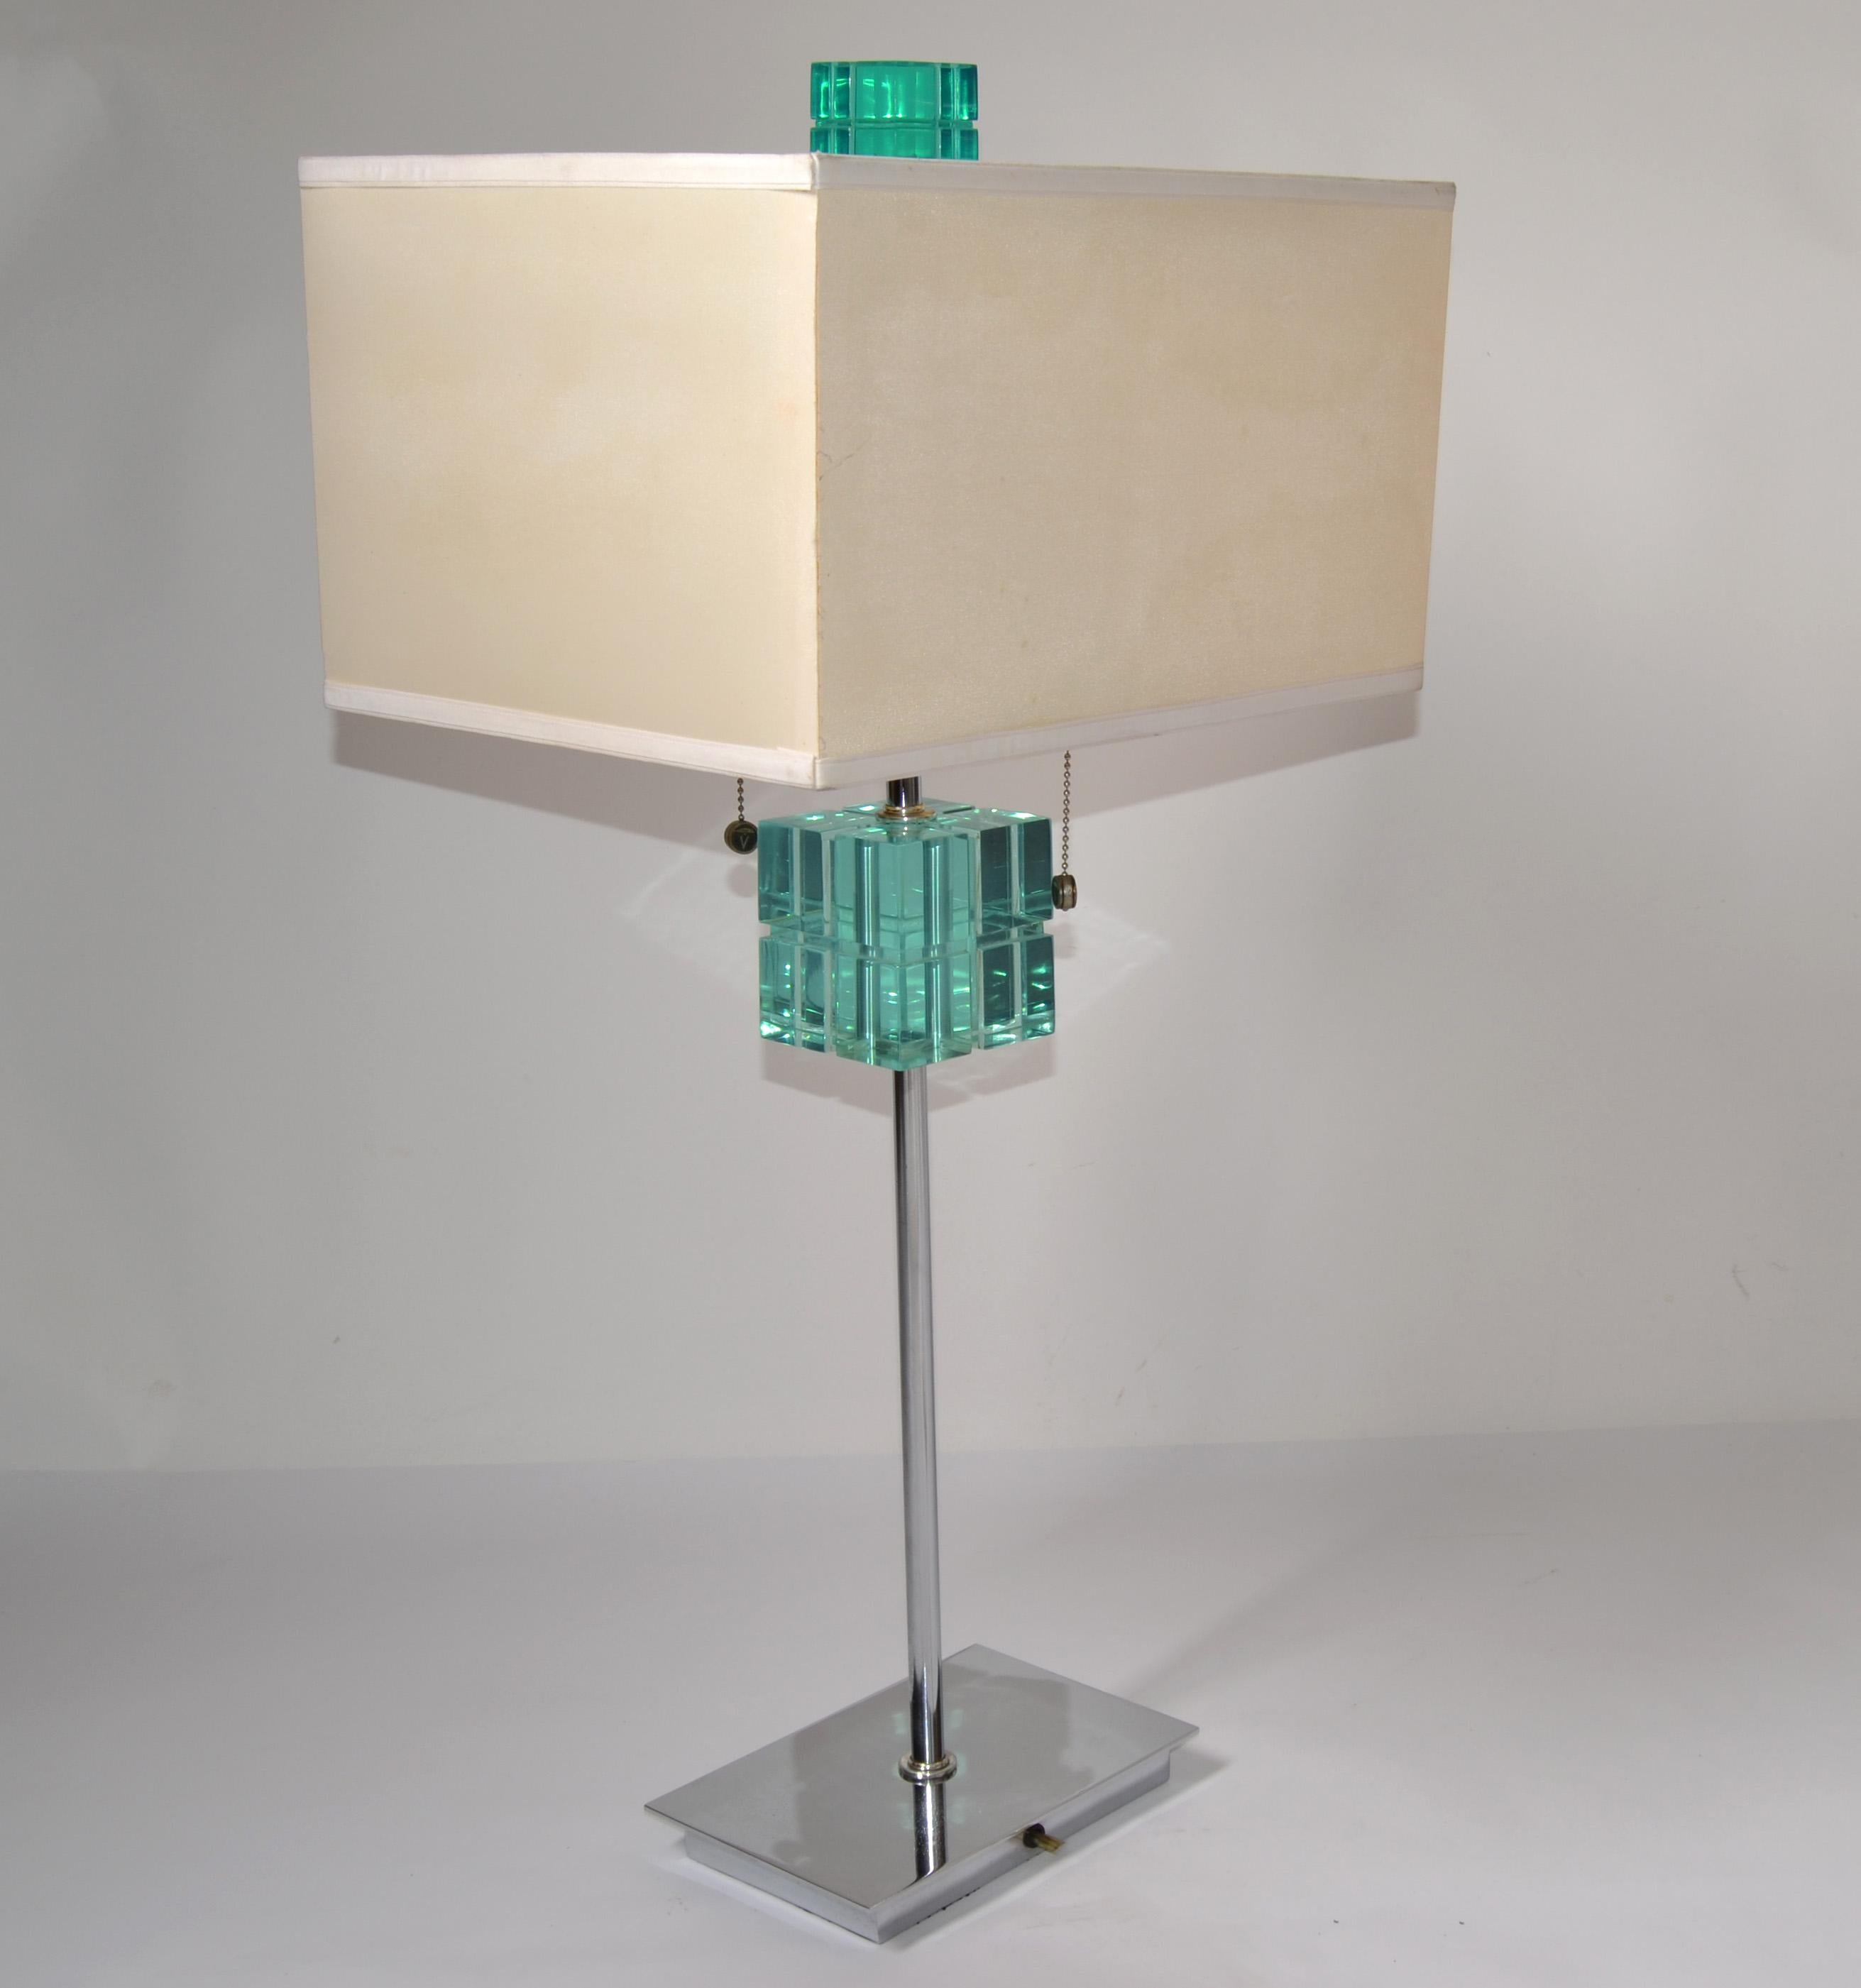 Hivo Van Teal Mid-Century Modern transparente smaragdgrüne Lucite und Chrom Tischlampe mit Rechteck beige Stoff Schatten.
Nickel-Beschläge mit S-Doppel-Cluster-Steckdosen und Zugschnüren. US-verdrahtet, UL-gelistet und in funktionstüchtigem